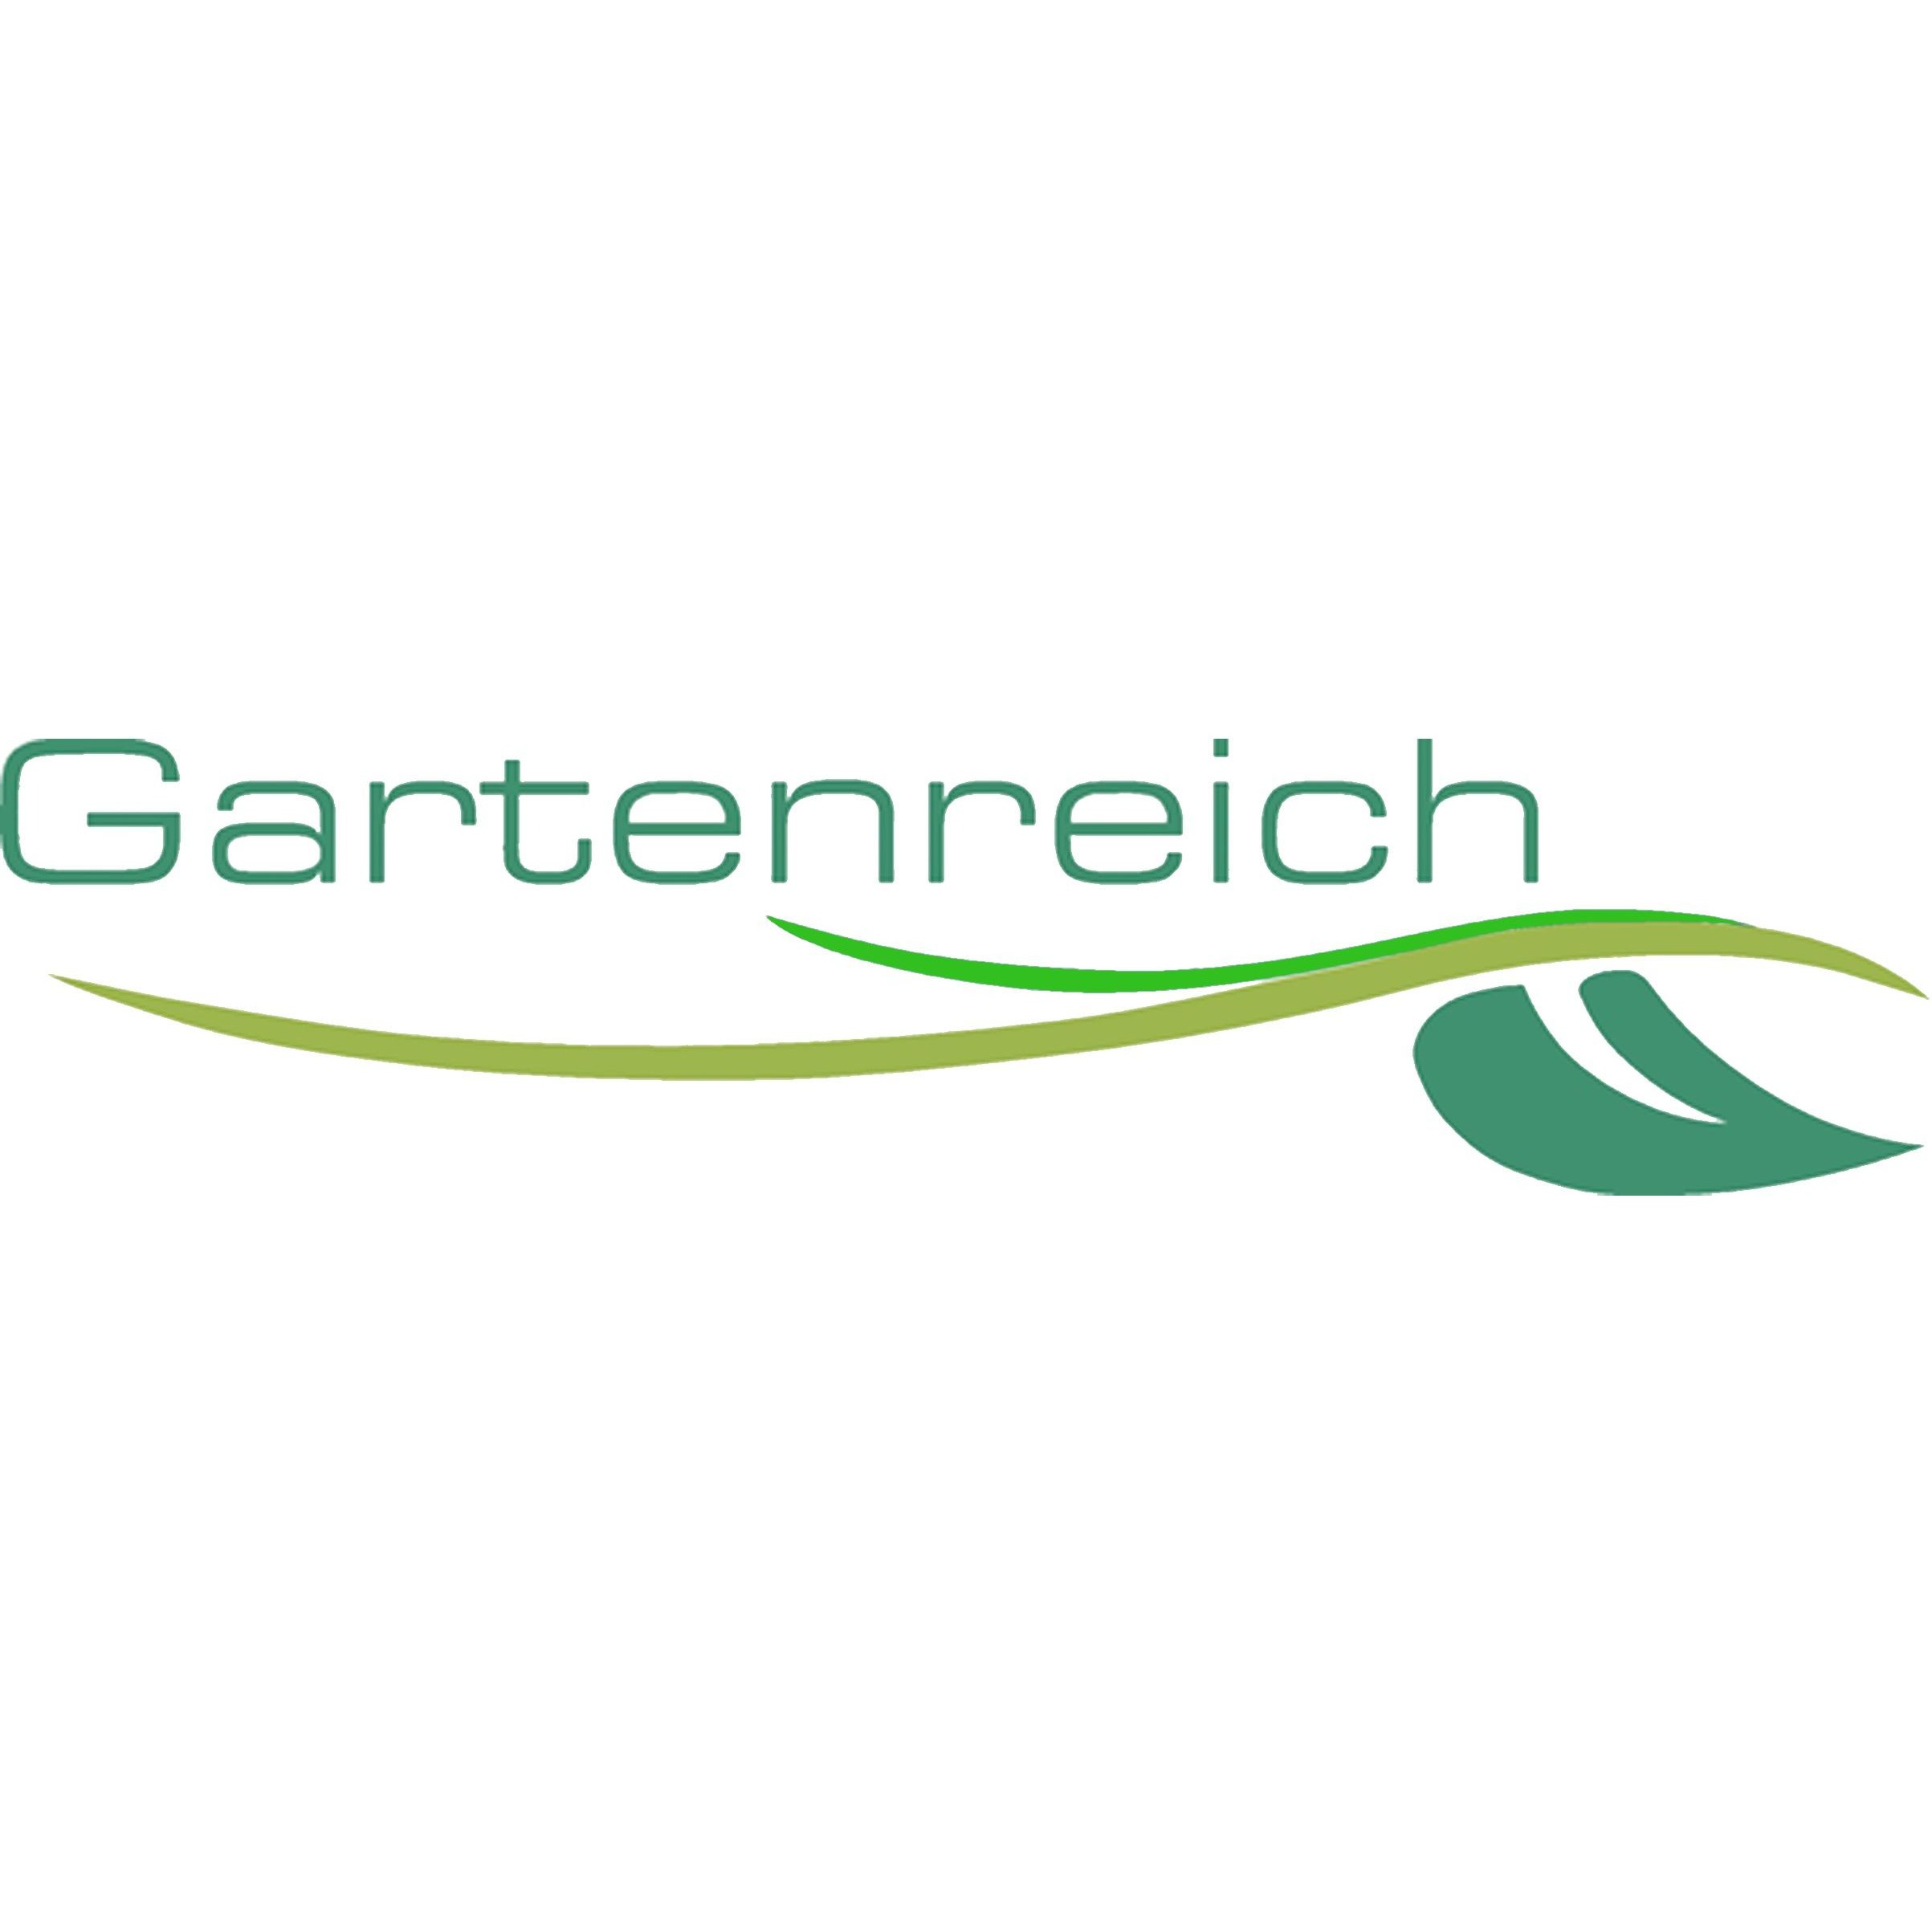 Garten- und Landschaftsgestaltung in Landau/Isar: Gartenreich Patrick Schwab